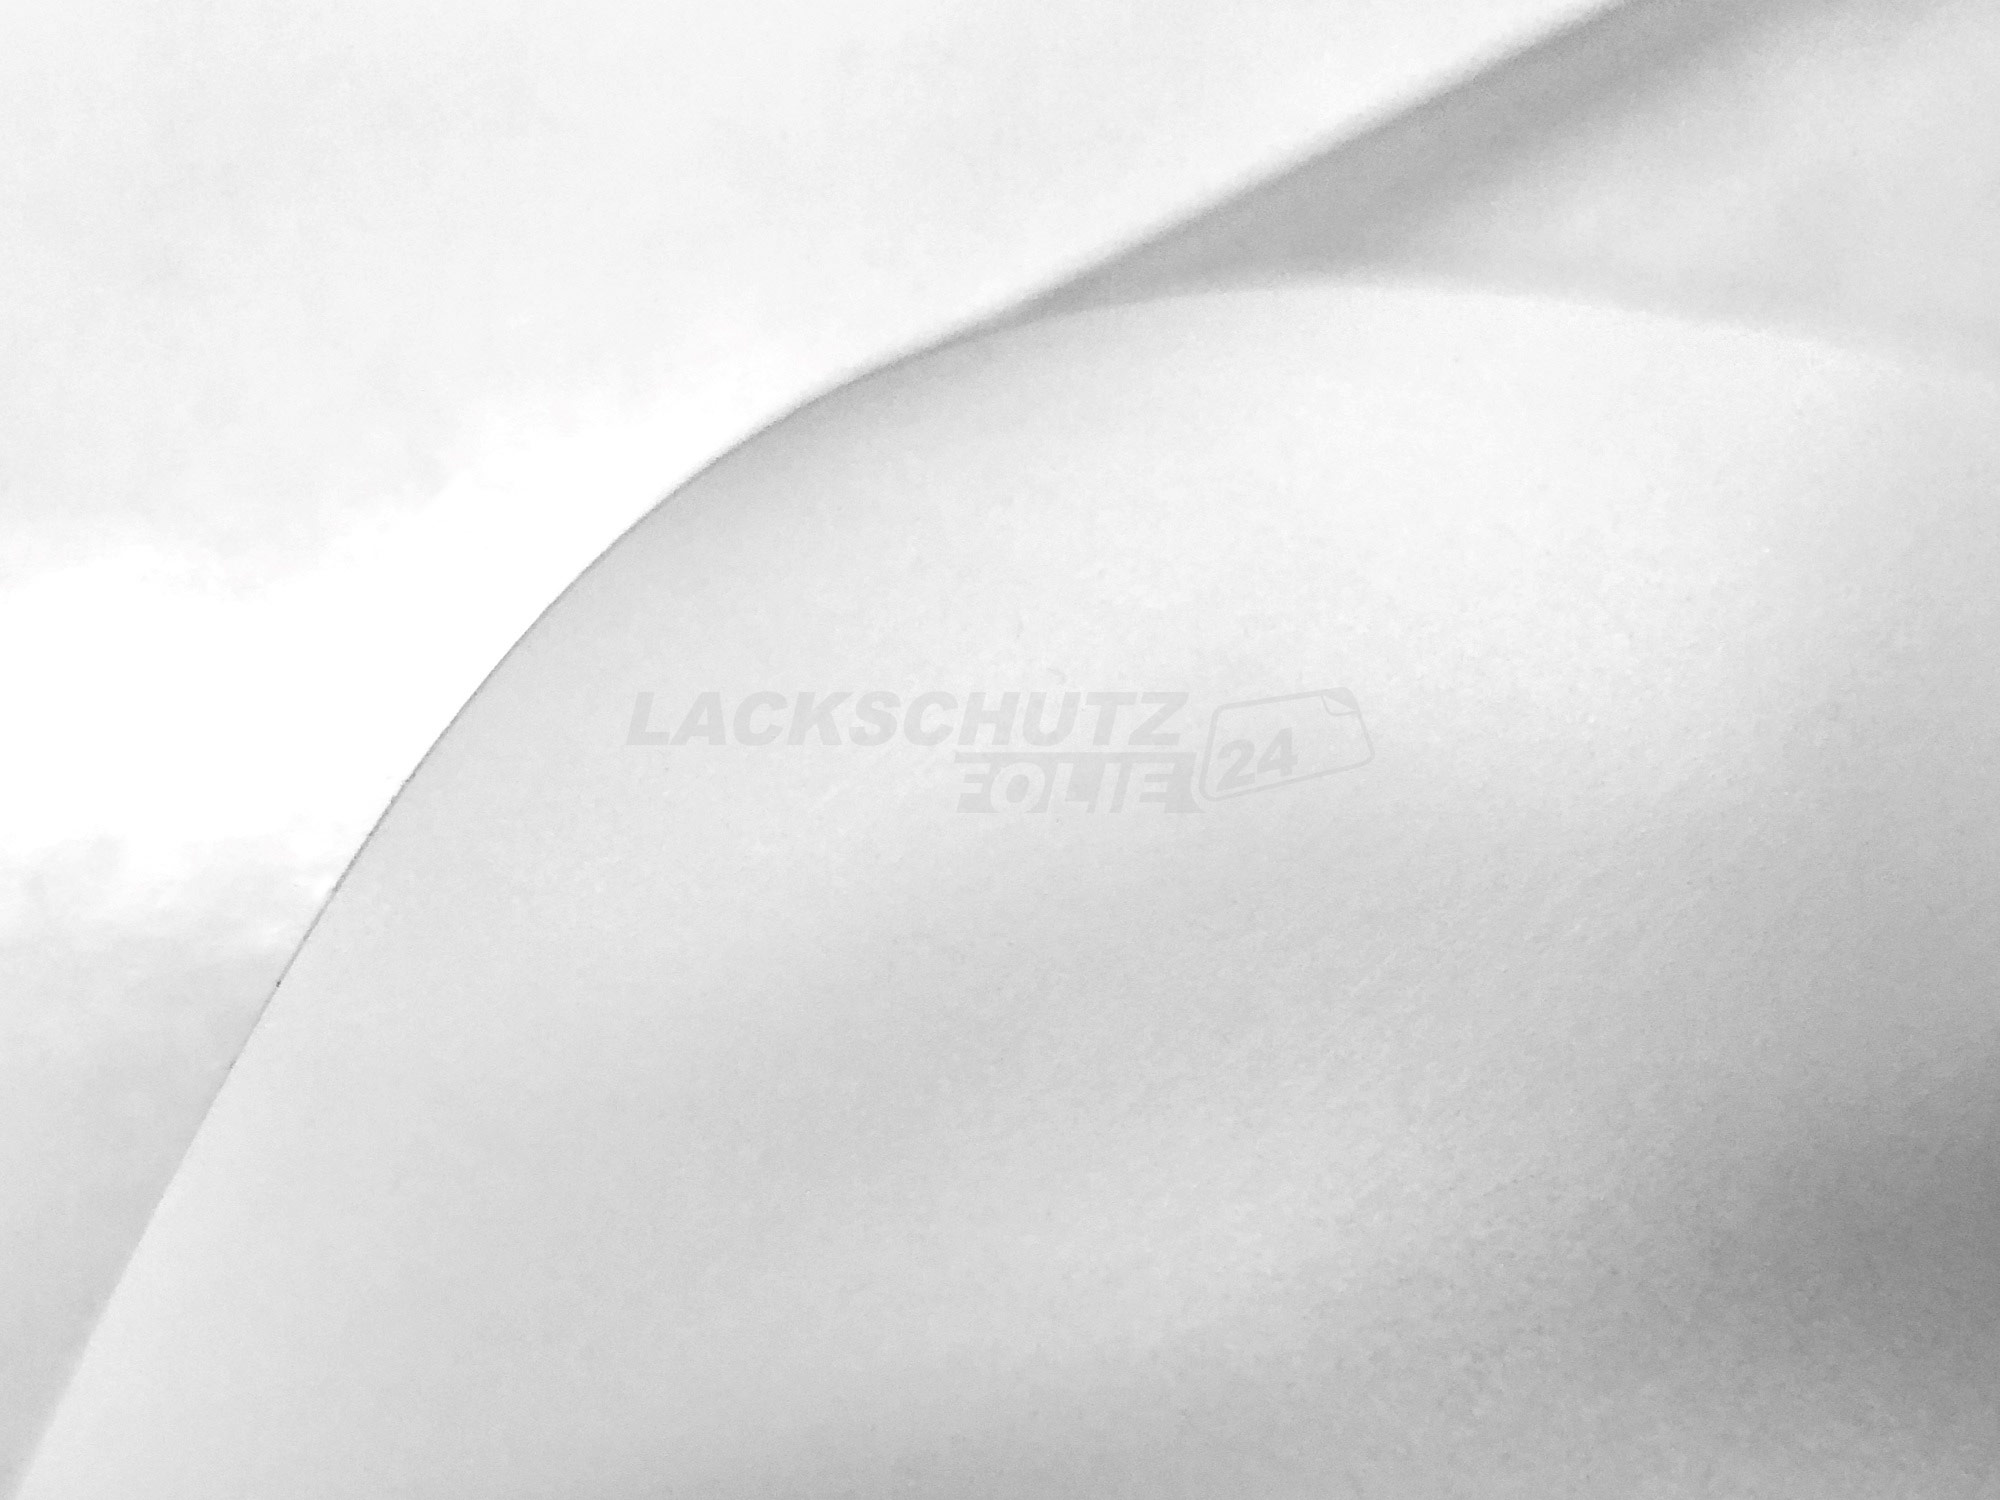 Ladekantenschutzfolie - Transparent Glatt MATT 110 µm stark  für Volvo S60 BJ 10/2010-2013